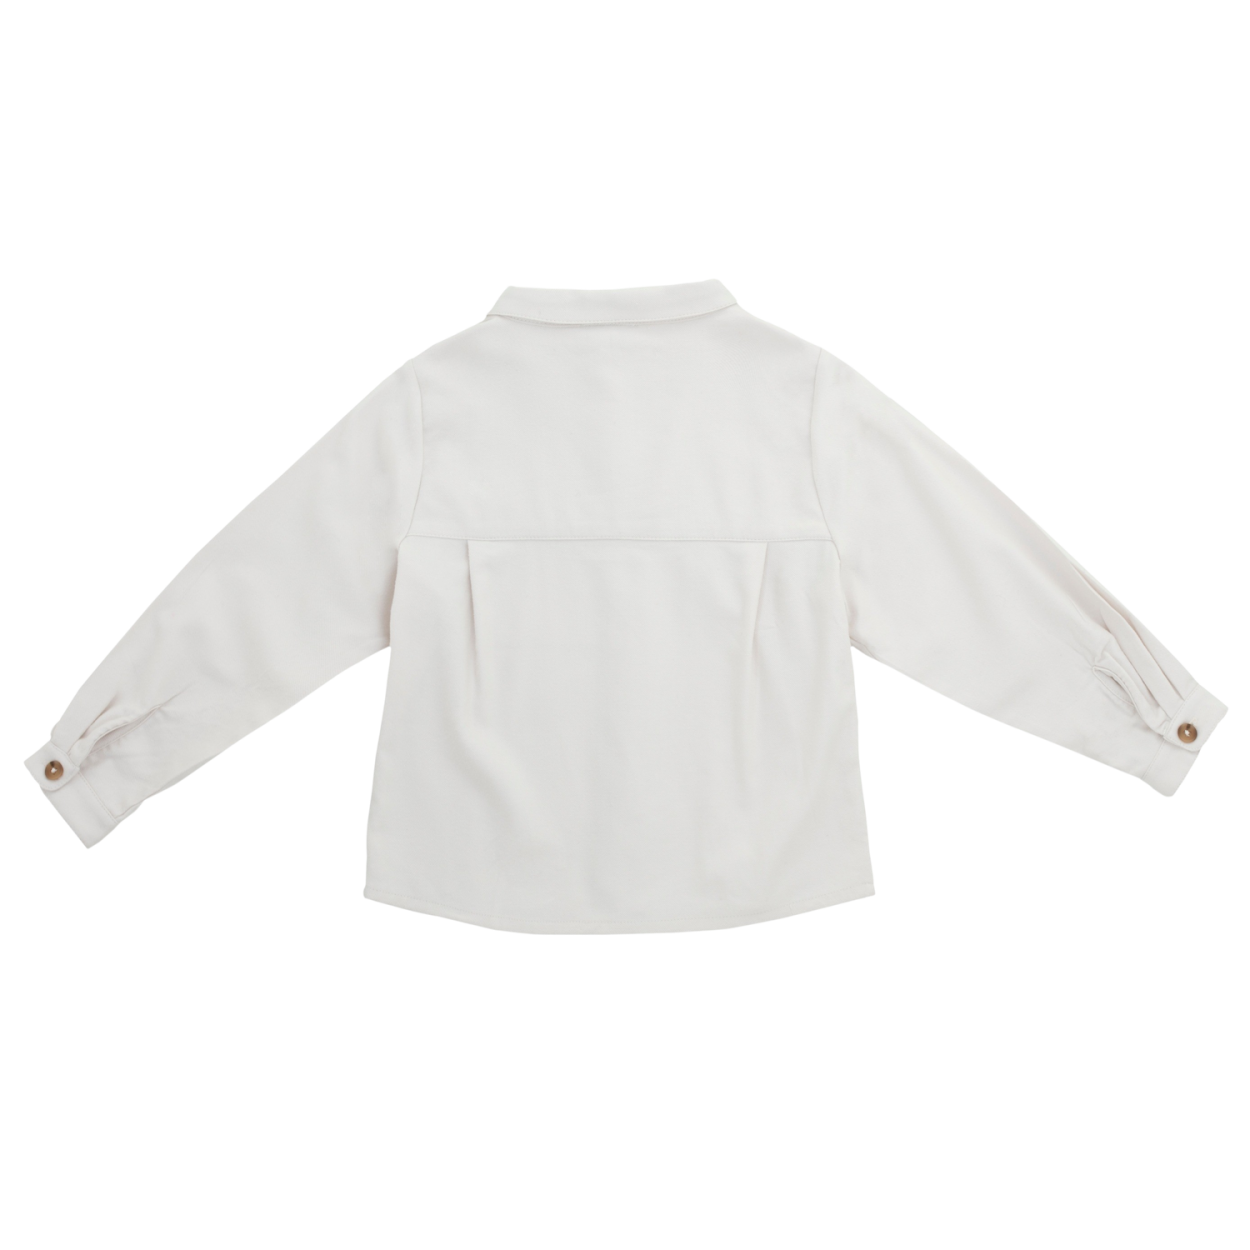 Lambert Shirt | White Sand